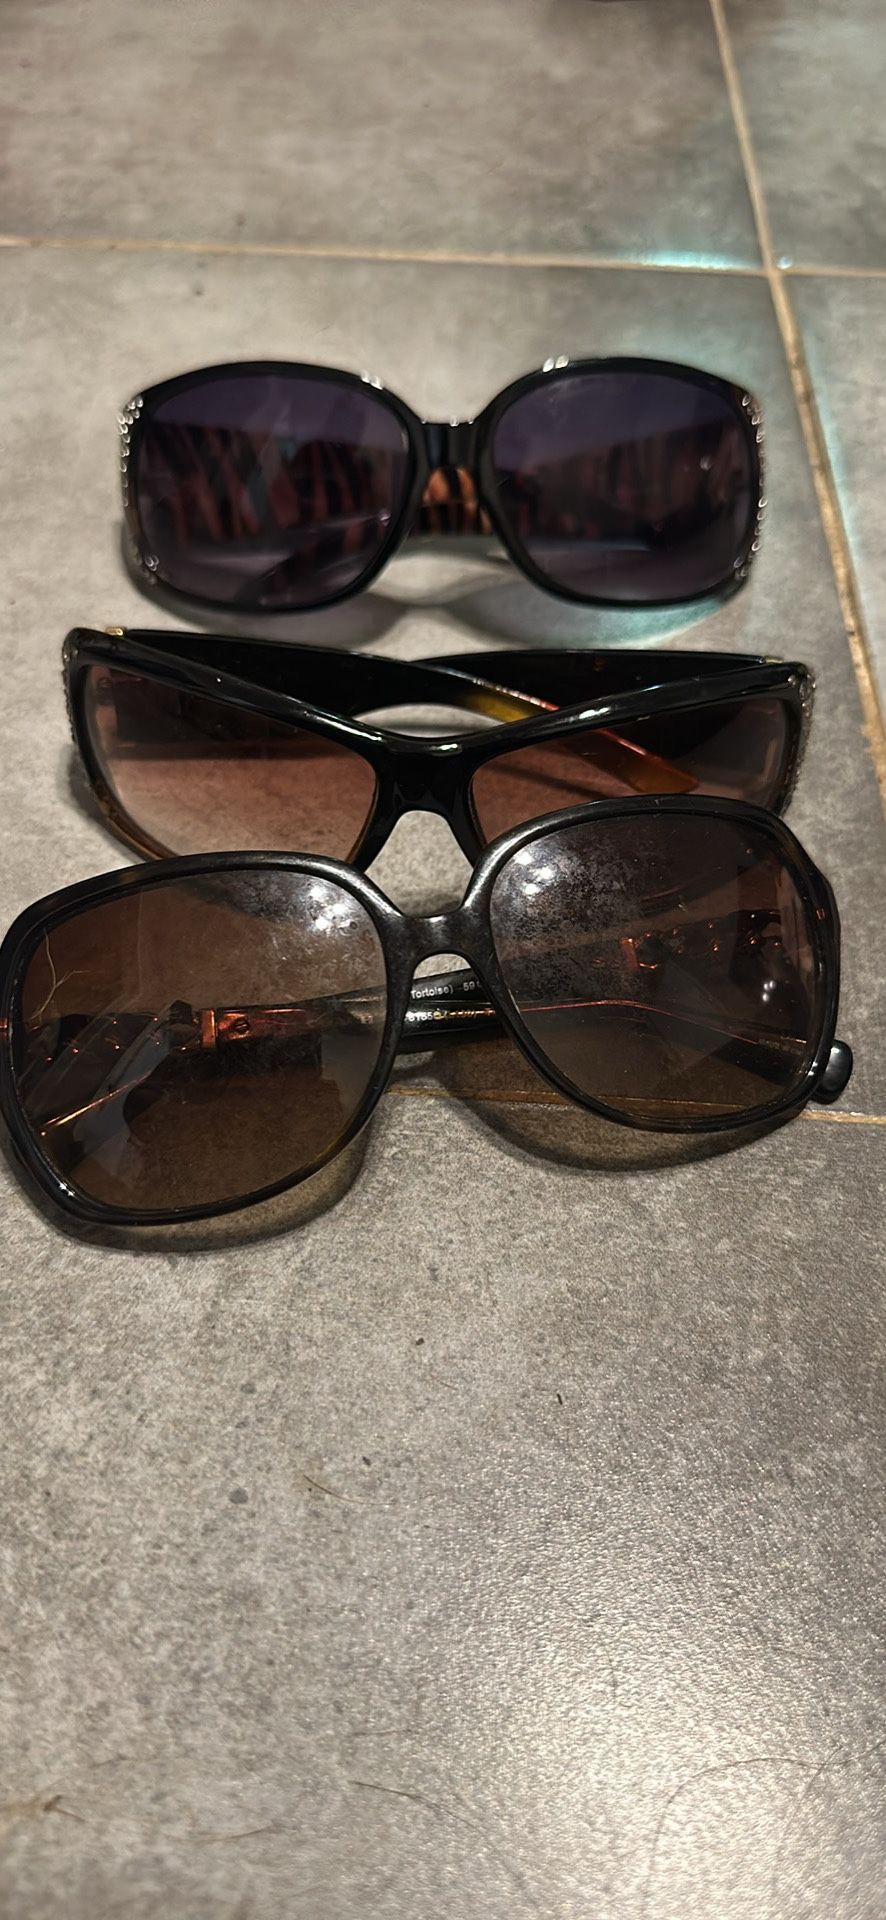 3 Pairs Of Ladies Sunglasses 